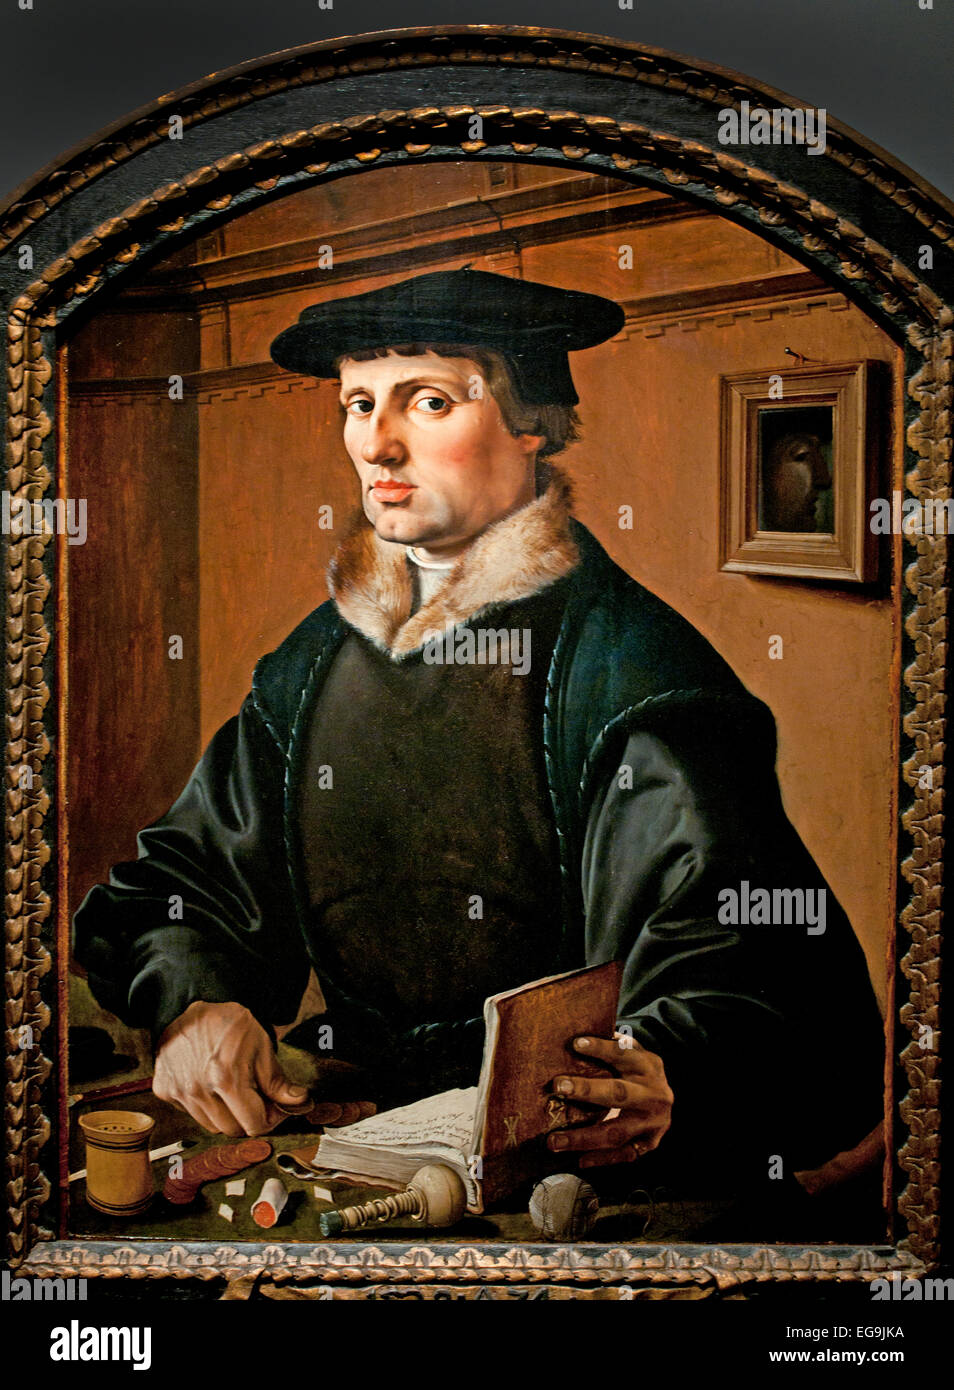 Le portrait d'un homme 1529 Maarten van Heemskerck (1498-1574) Pays-Bas Pays-Bas Pays-Bas néerlandais ( un homme travaille sur ses comptes ) Banque D'Images